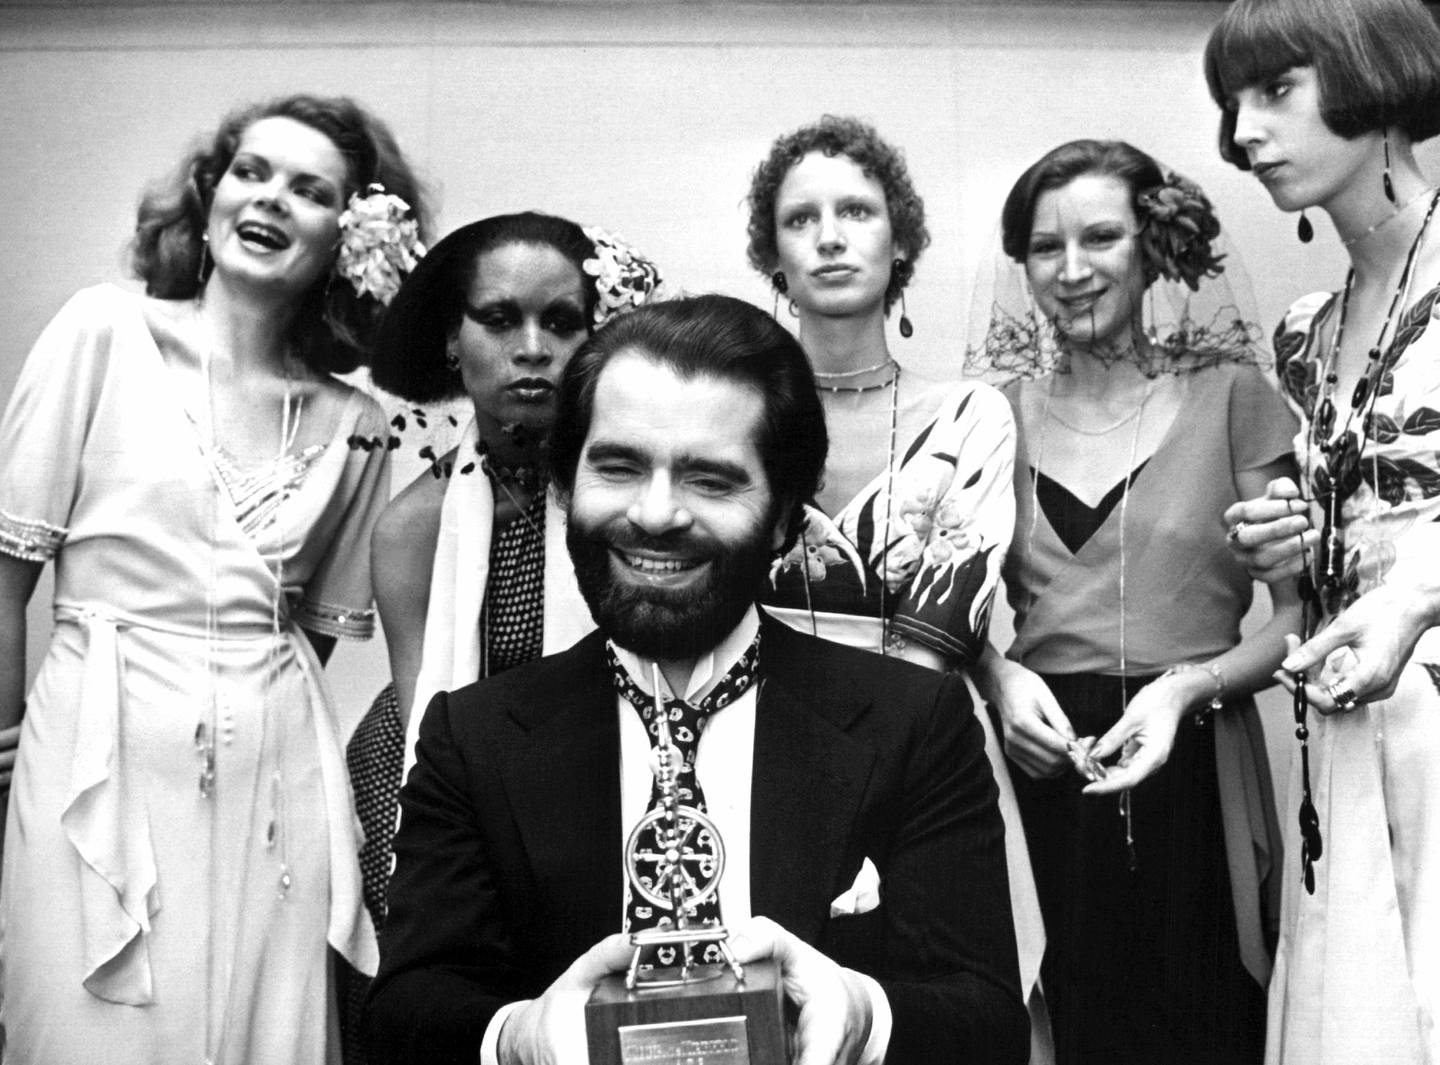 November 29, 1973: Lagerfeld flankert av modeller etter å ha mottatt et trofé for sin design.